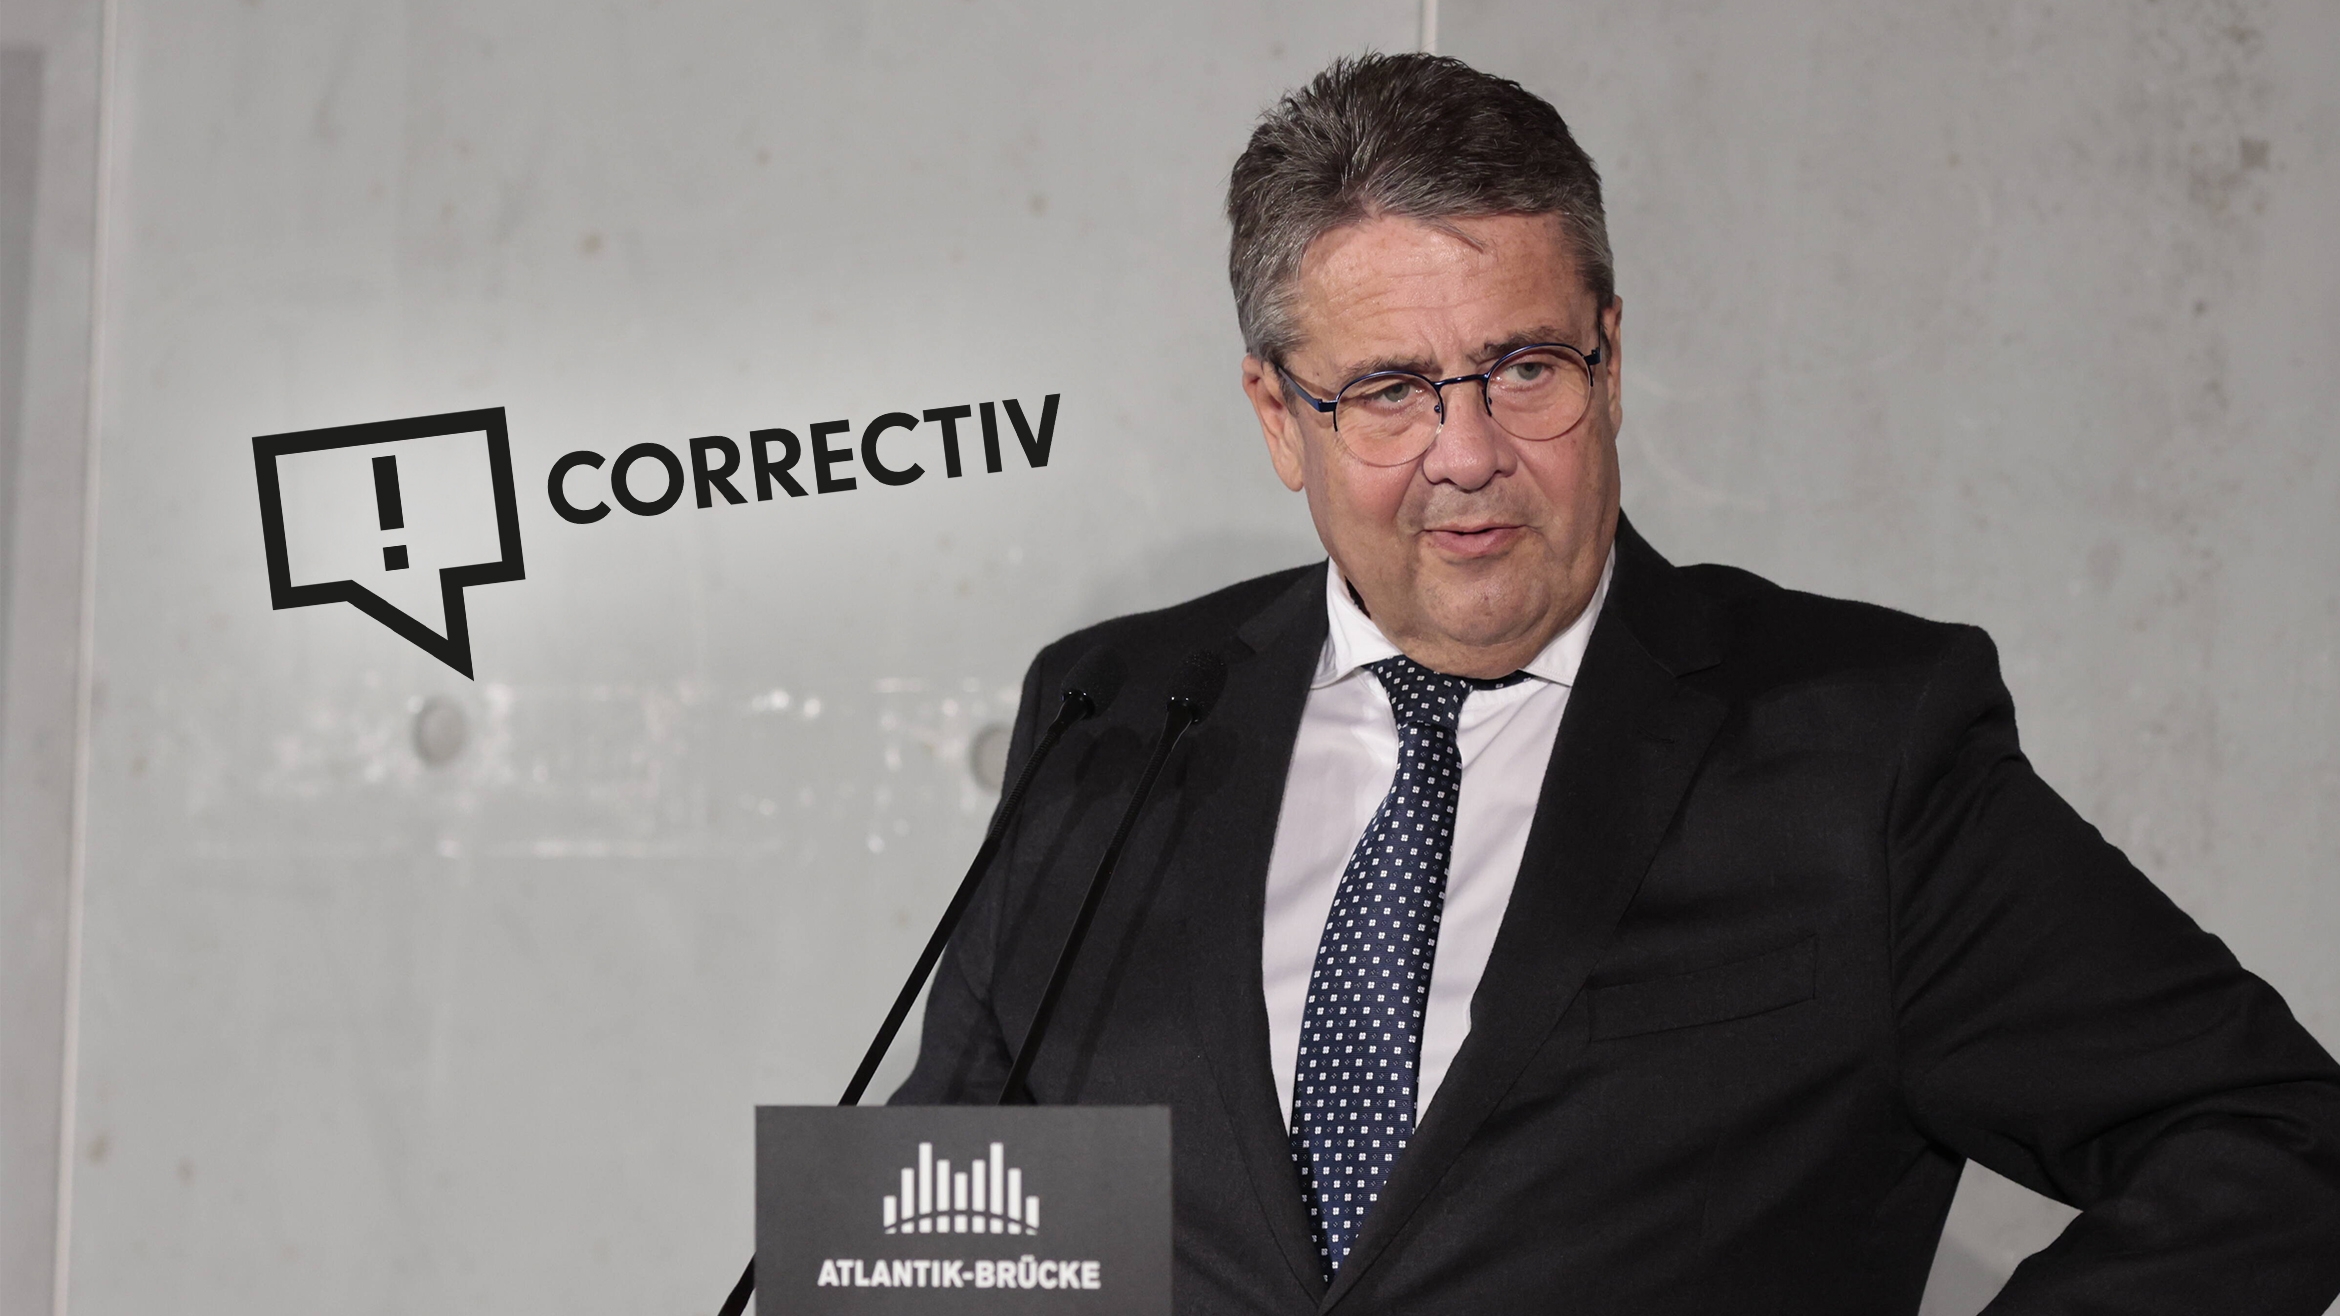 Sigmar Gabriel und "Correctiv" streiten vor Gericht -